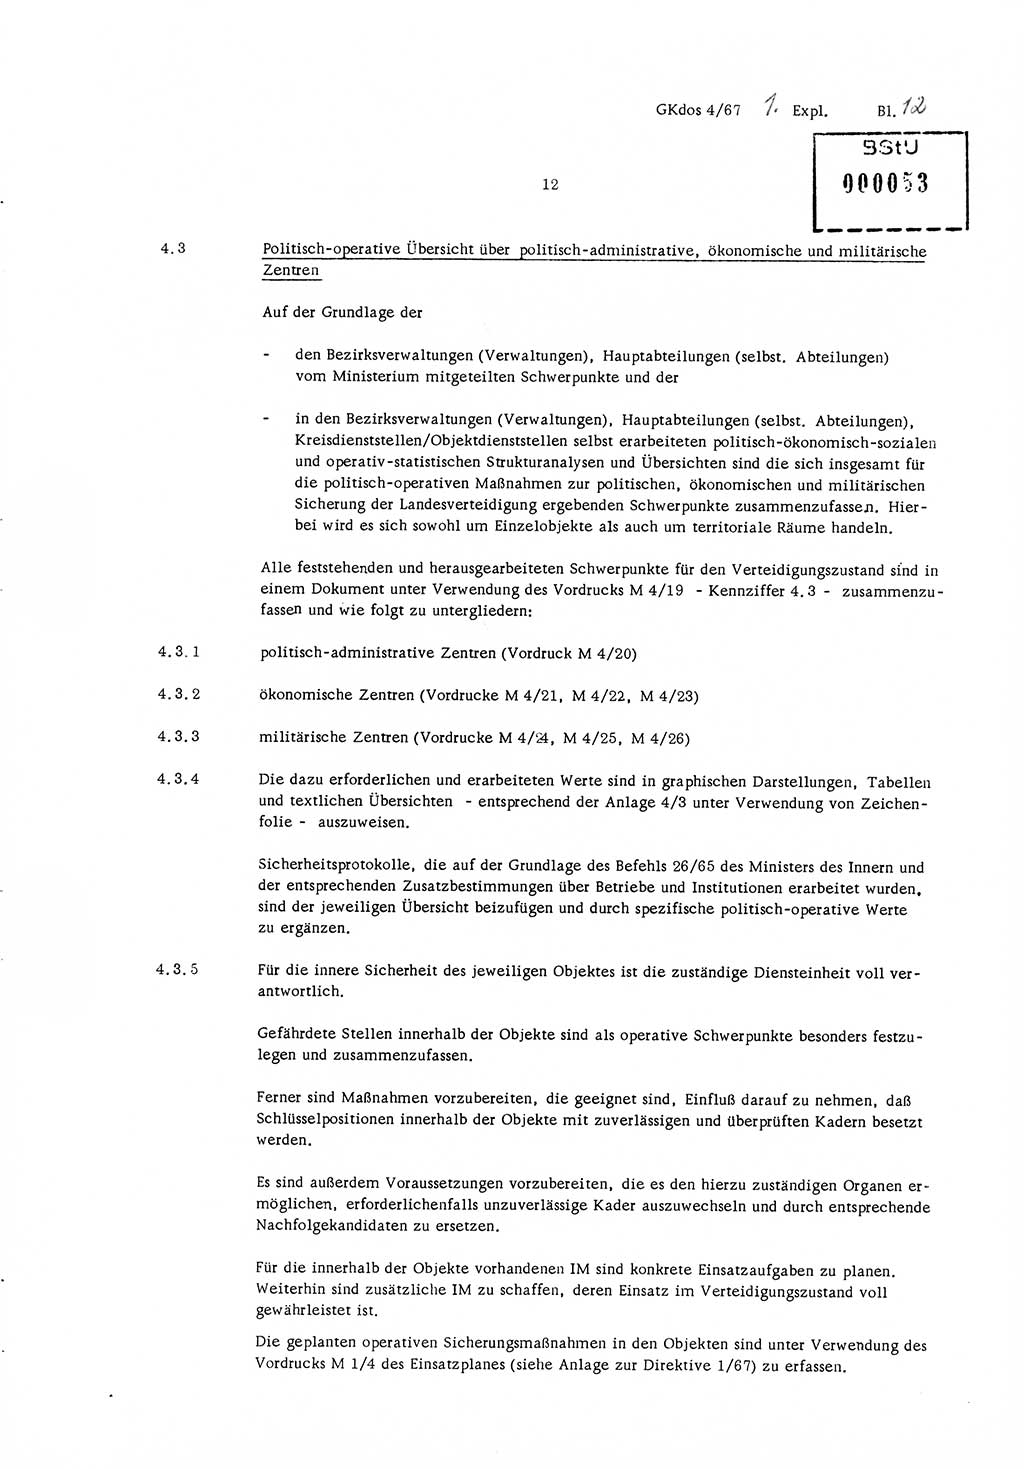 Durchführungsbestimmung Nr. 1 über die spezifisch-operative Mobilmachungsarbeit im Ministerium für Staatssicherheit (MfS) und in den nachgeordneten Diensteinheiten zur Direktive Nr. 4/67 des Ministers für Staatssicherheit, Deutsche Demokratische Republik (DDR), Ministerium für Staatssicherheit (MfS), Der Minister, Geheime Kommandosache (GKdos) 4/67, Berlin 1967, Seite 12 (DB 1 Dir. 1/67 DDR MfS Min. GKdos 4/67 1967, S. 12)